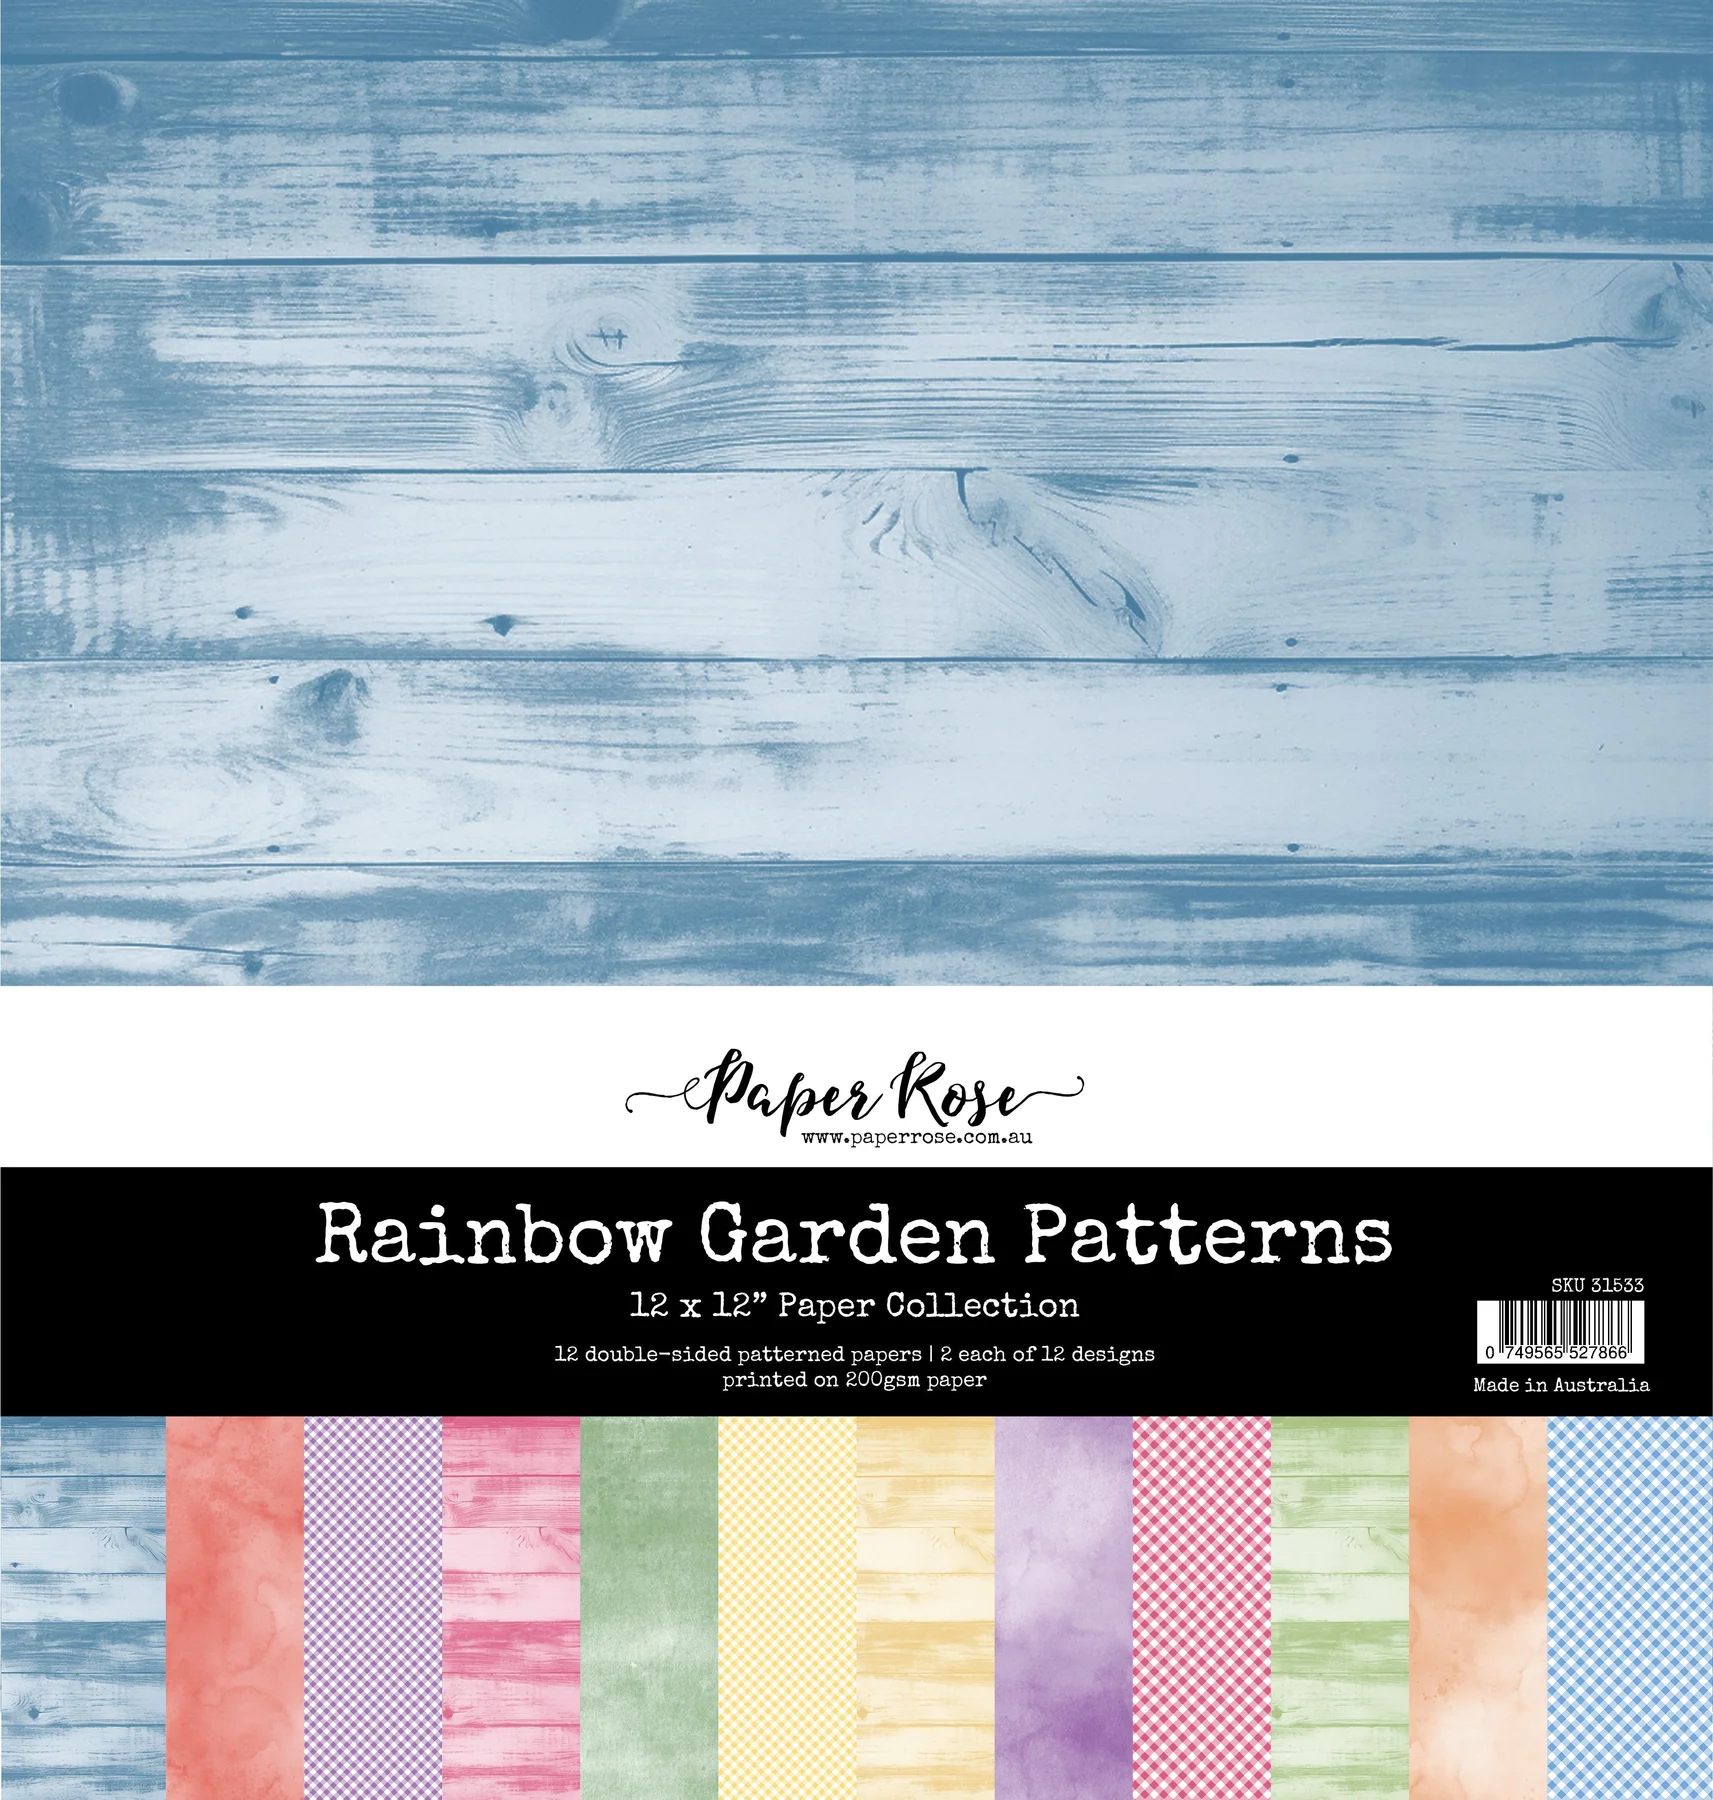 Rainbow Garden Patterns 12x12 Paper Collection 31533